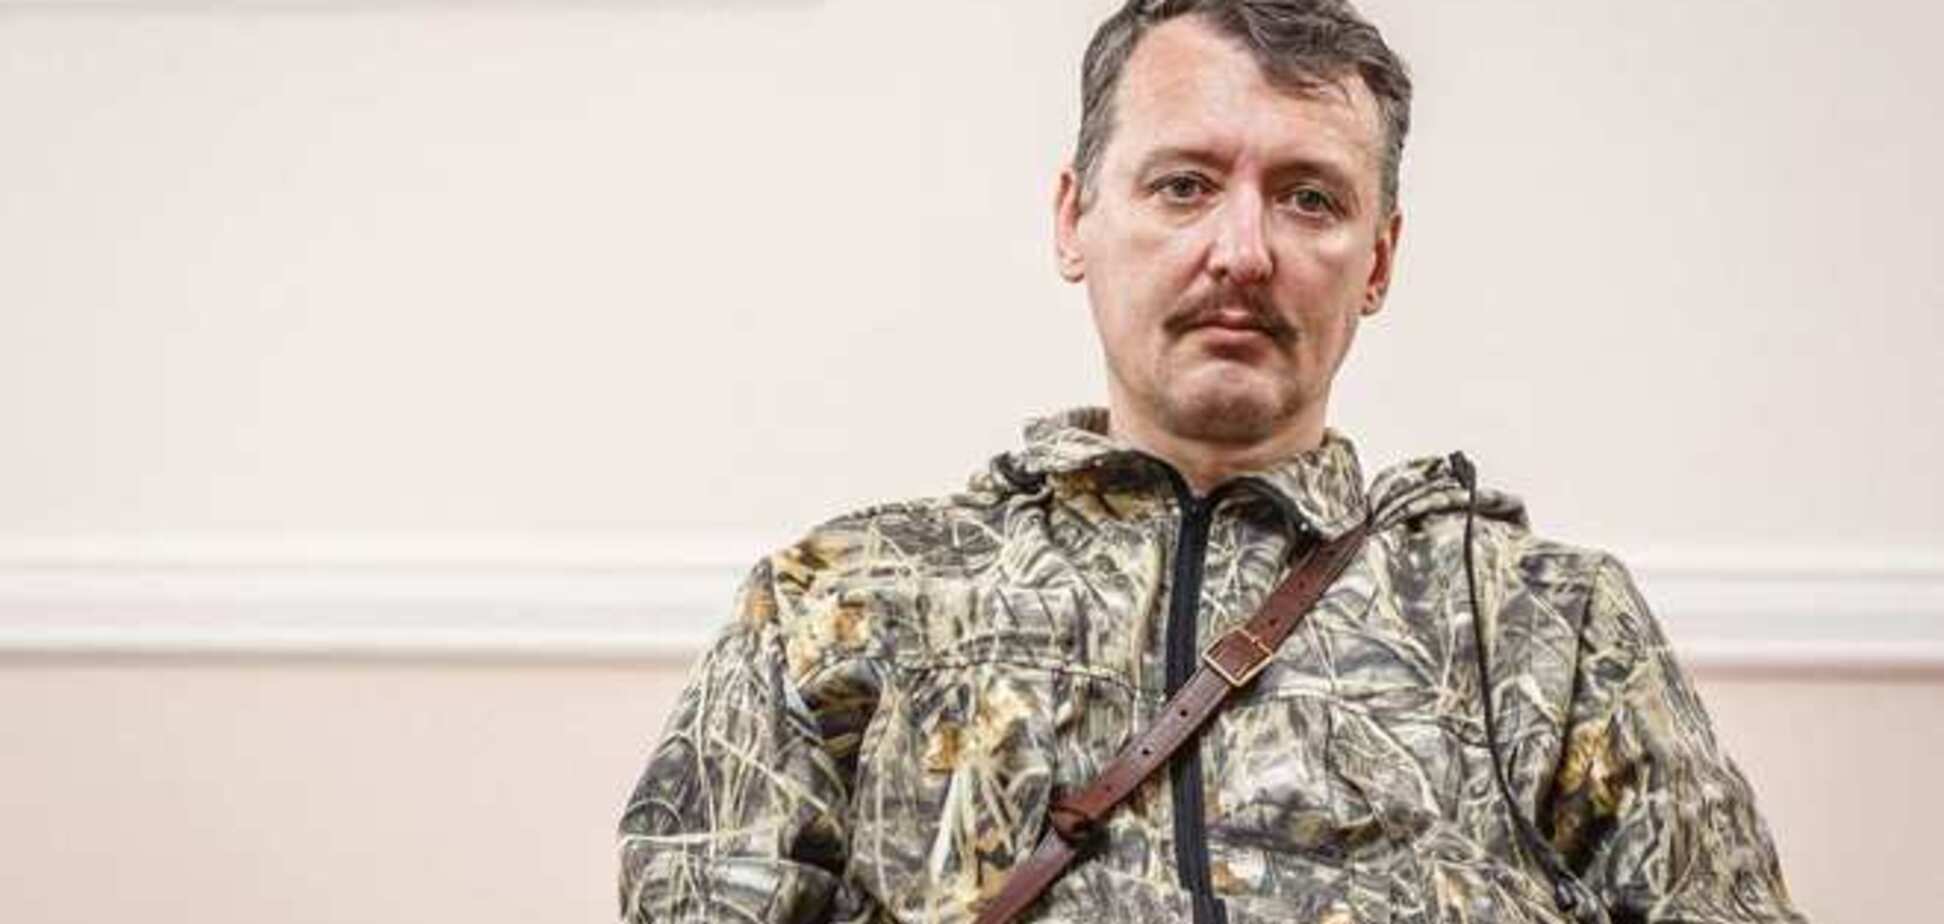 Гіркін заявив, що в Донецьку 'свої' ж збирають на нього компромат з метою шантажу